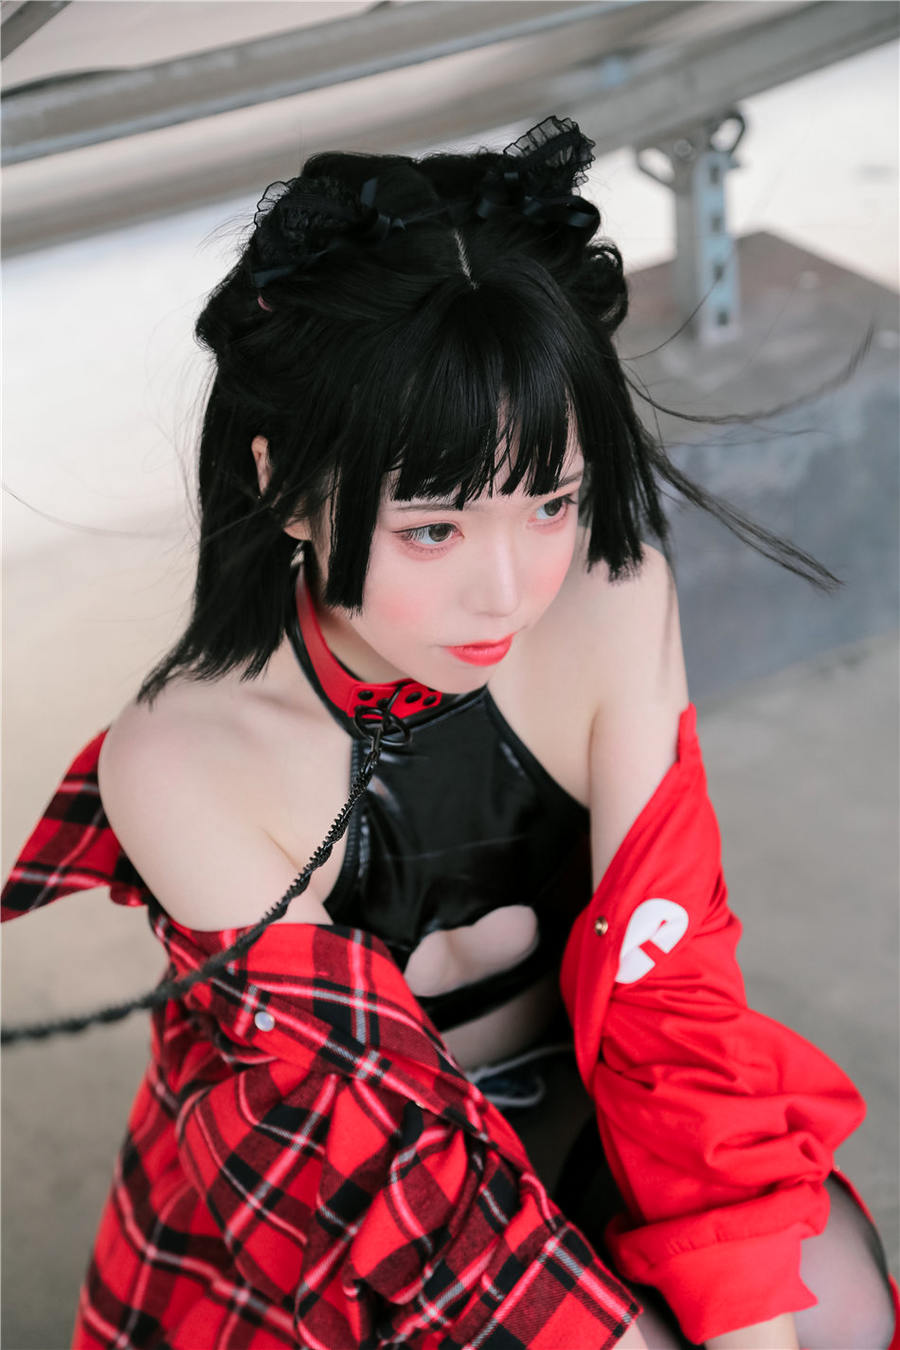 可爱妹子Fushii_海堂超短牛仔热裤户外写真 网红coser第802期第1张